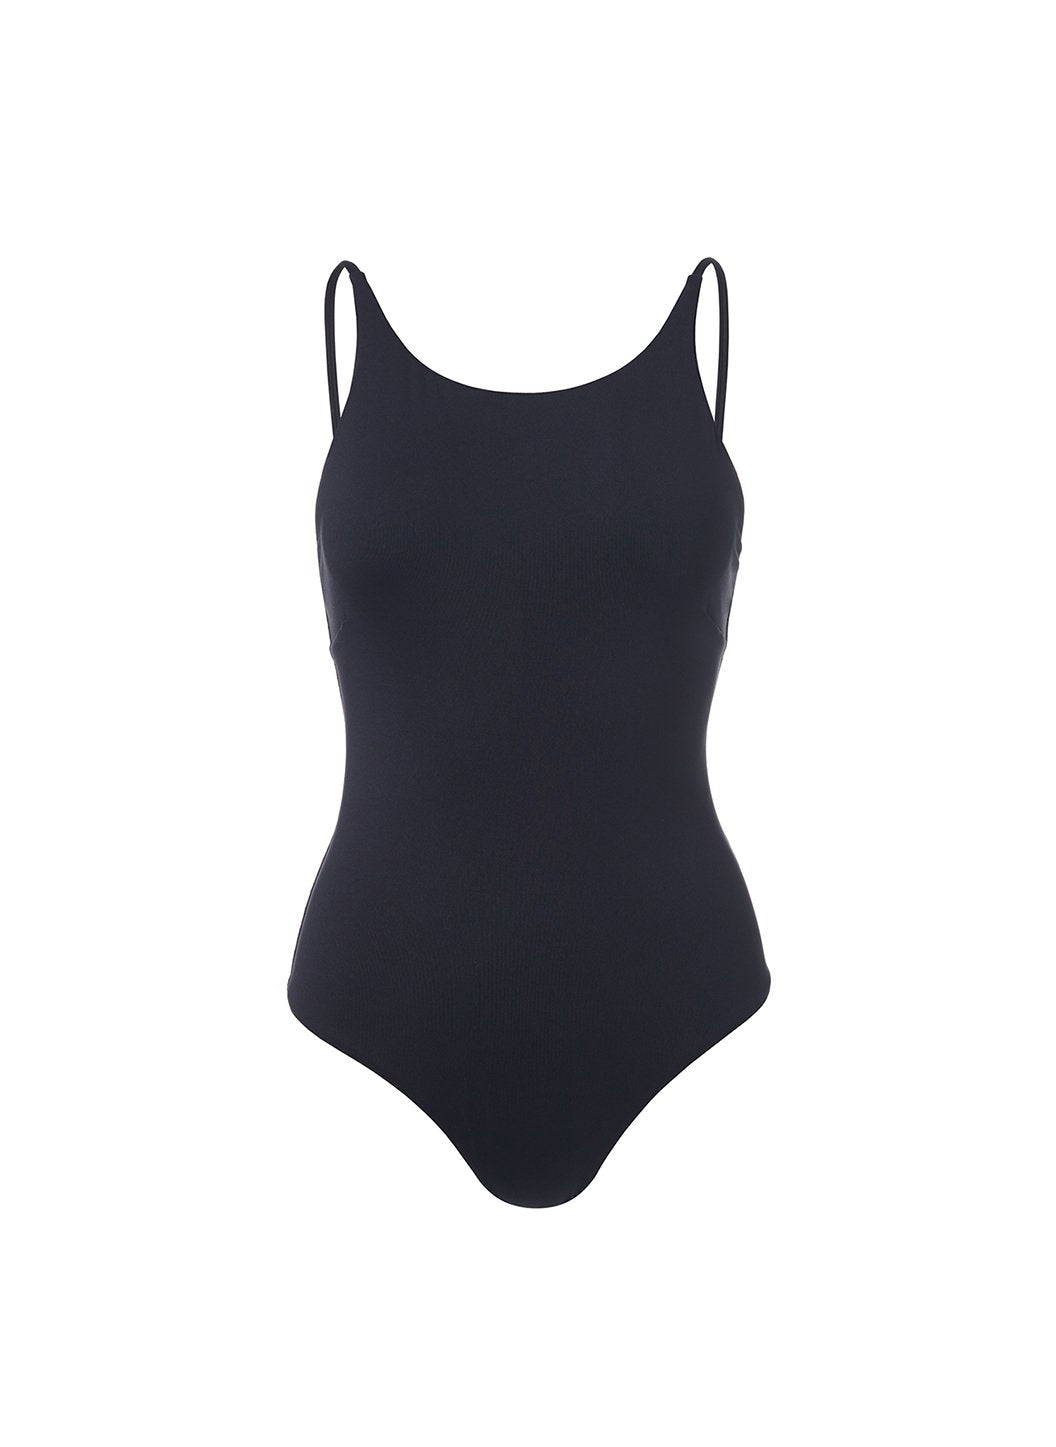 Sydney Black Rouched Bandeau Swimsuit